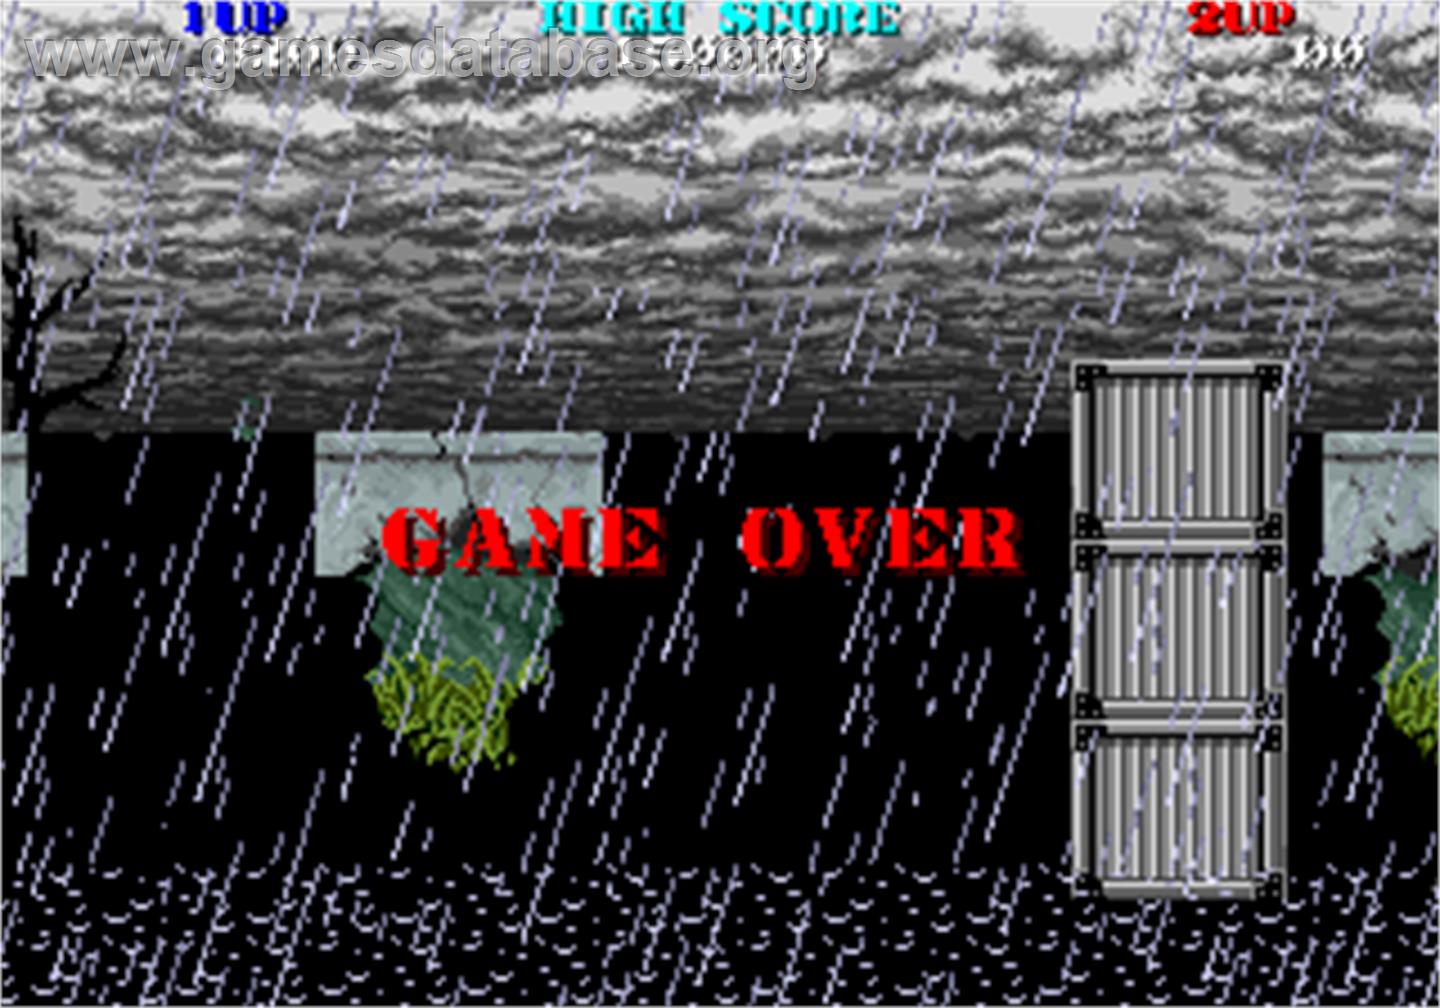 Thunder Fox - Arcade - Artwork - Game Over Screen